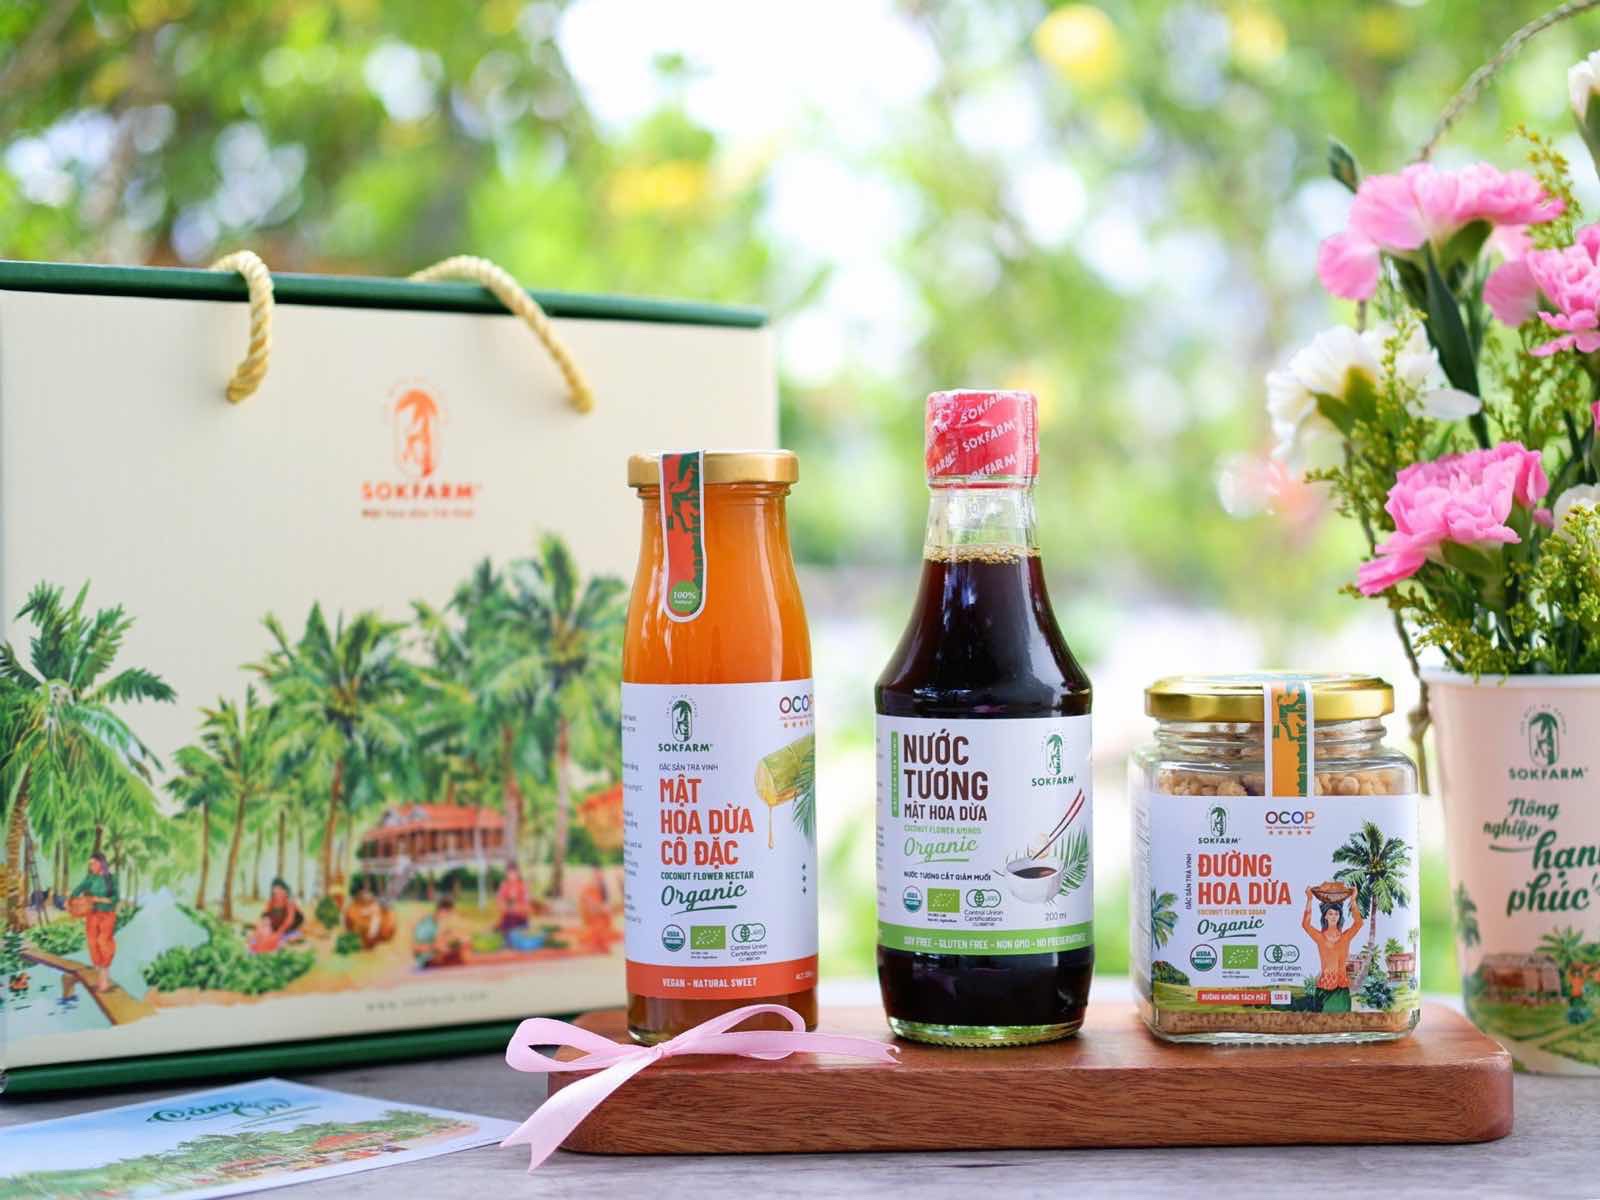 Mật hoa dừa, đường hoa dừa và nước tương mật hoa dừa là những sản phẩm “đinh” của thương hiệu này và sẽ lên sóng livestream “Shopee - Tinh Hoa Việt Du Ký” tập đầu tiên.